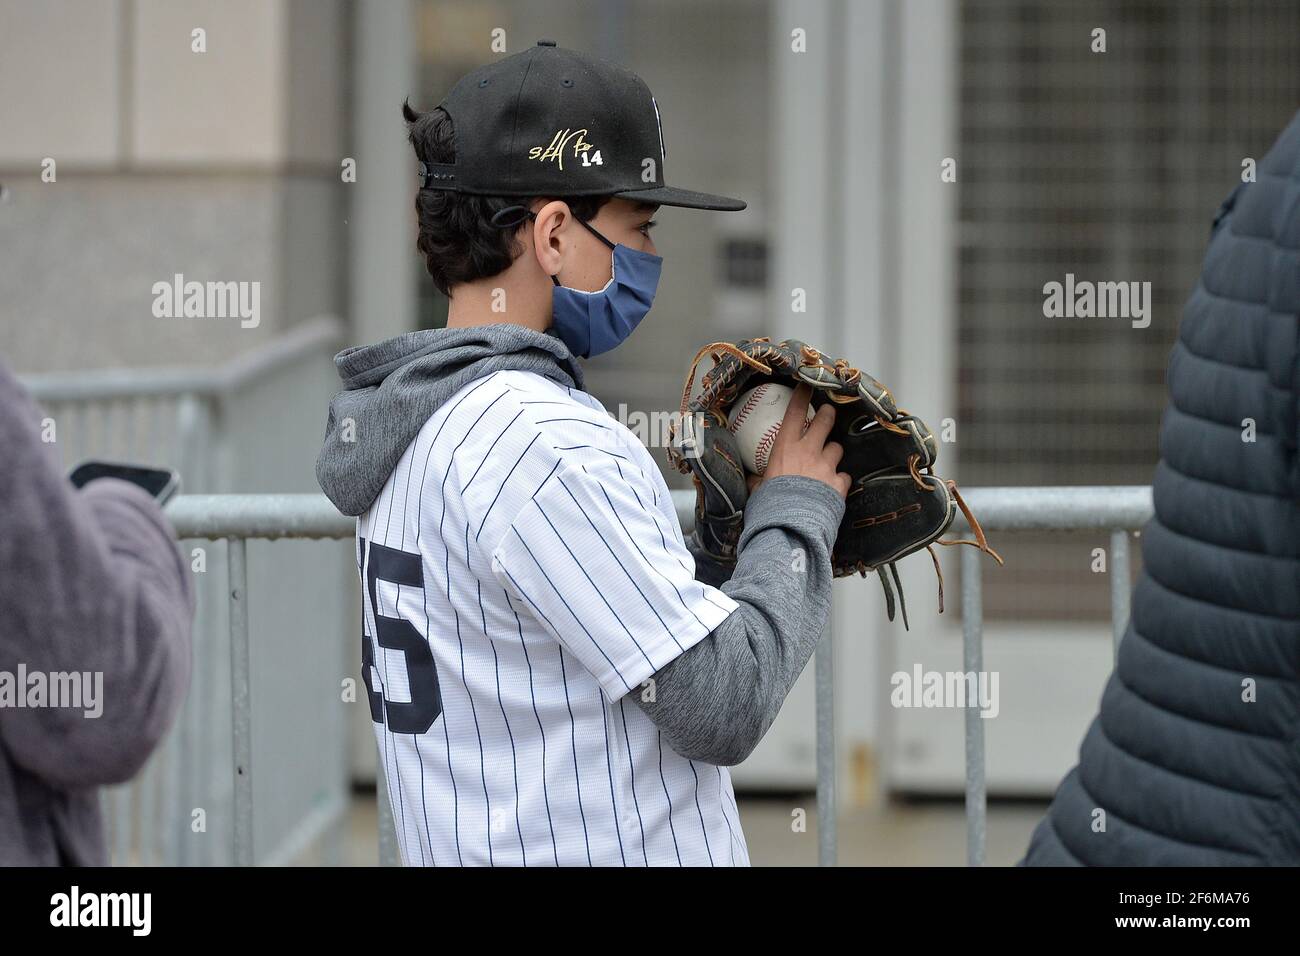 Un joven fan que lleva una camiseta de rayas y sostiene un guante de béisbol y una pelota espera en fila para asistir al partido de béisbol de los Yankees Nueva